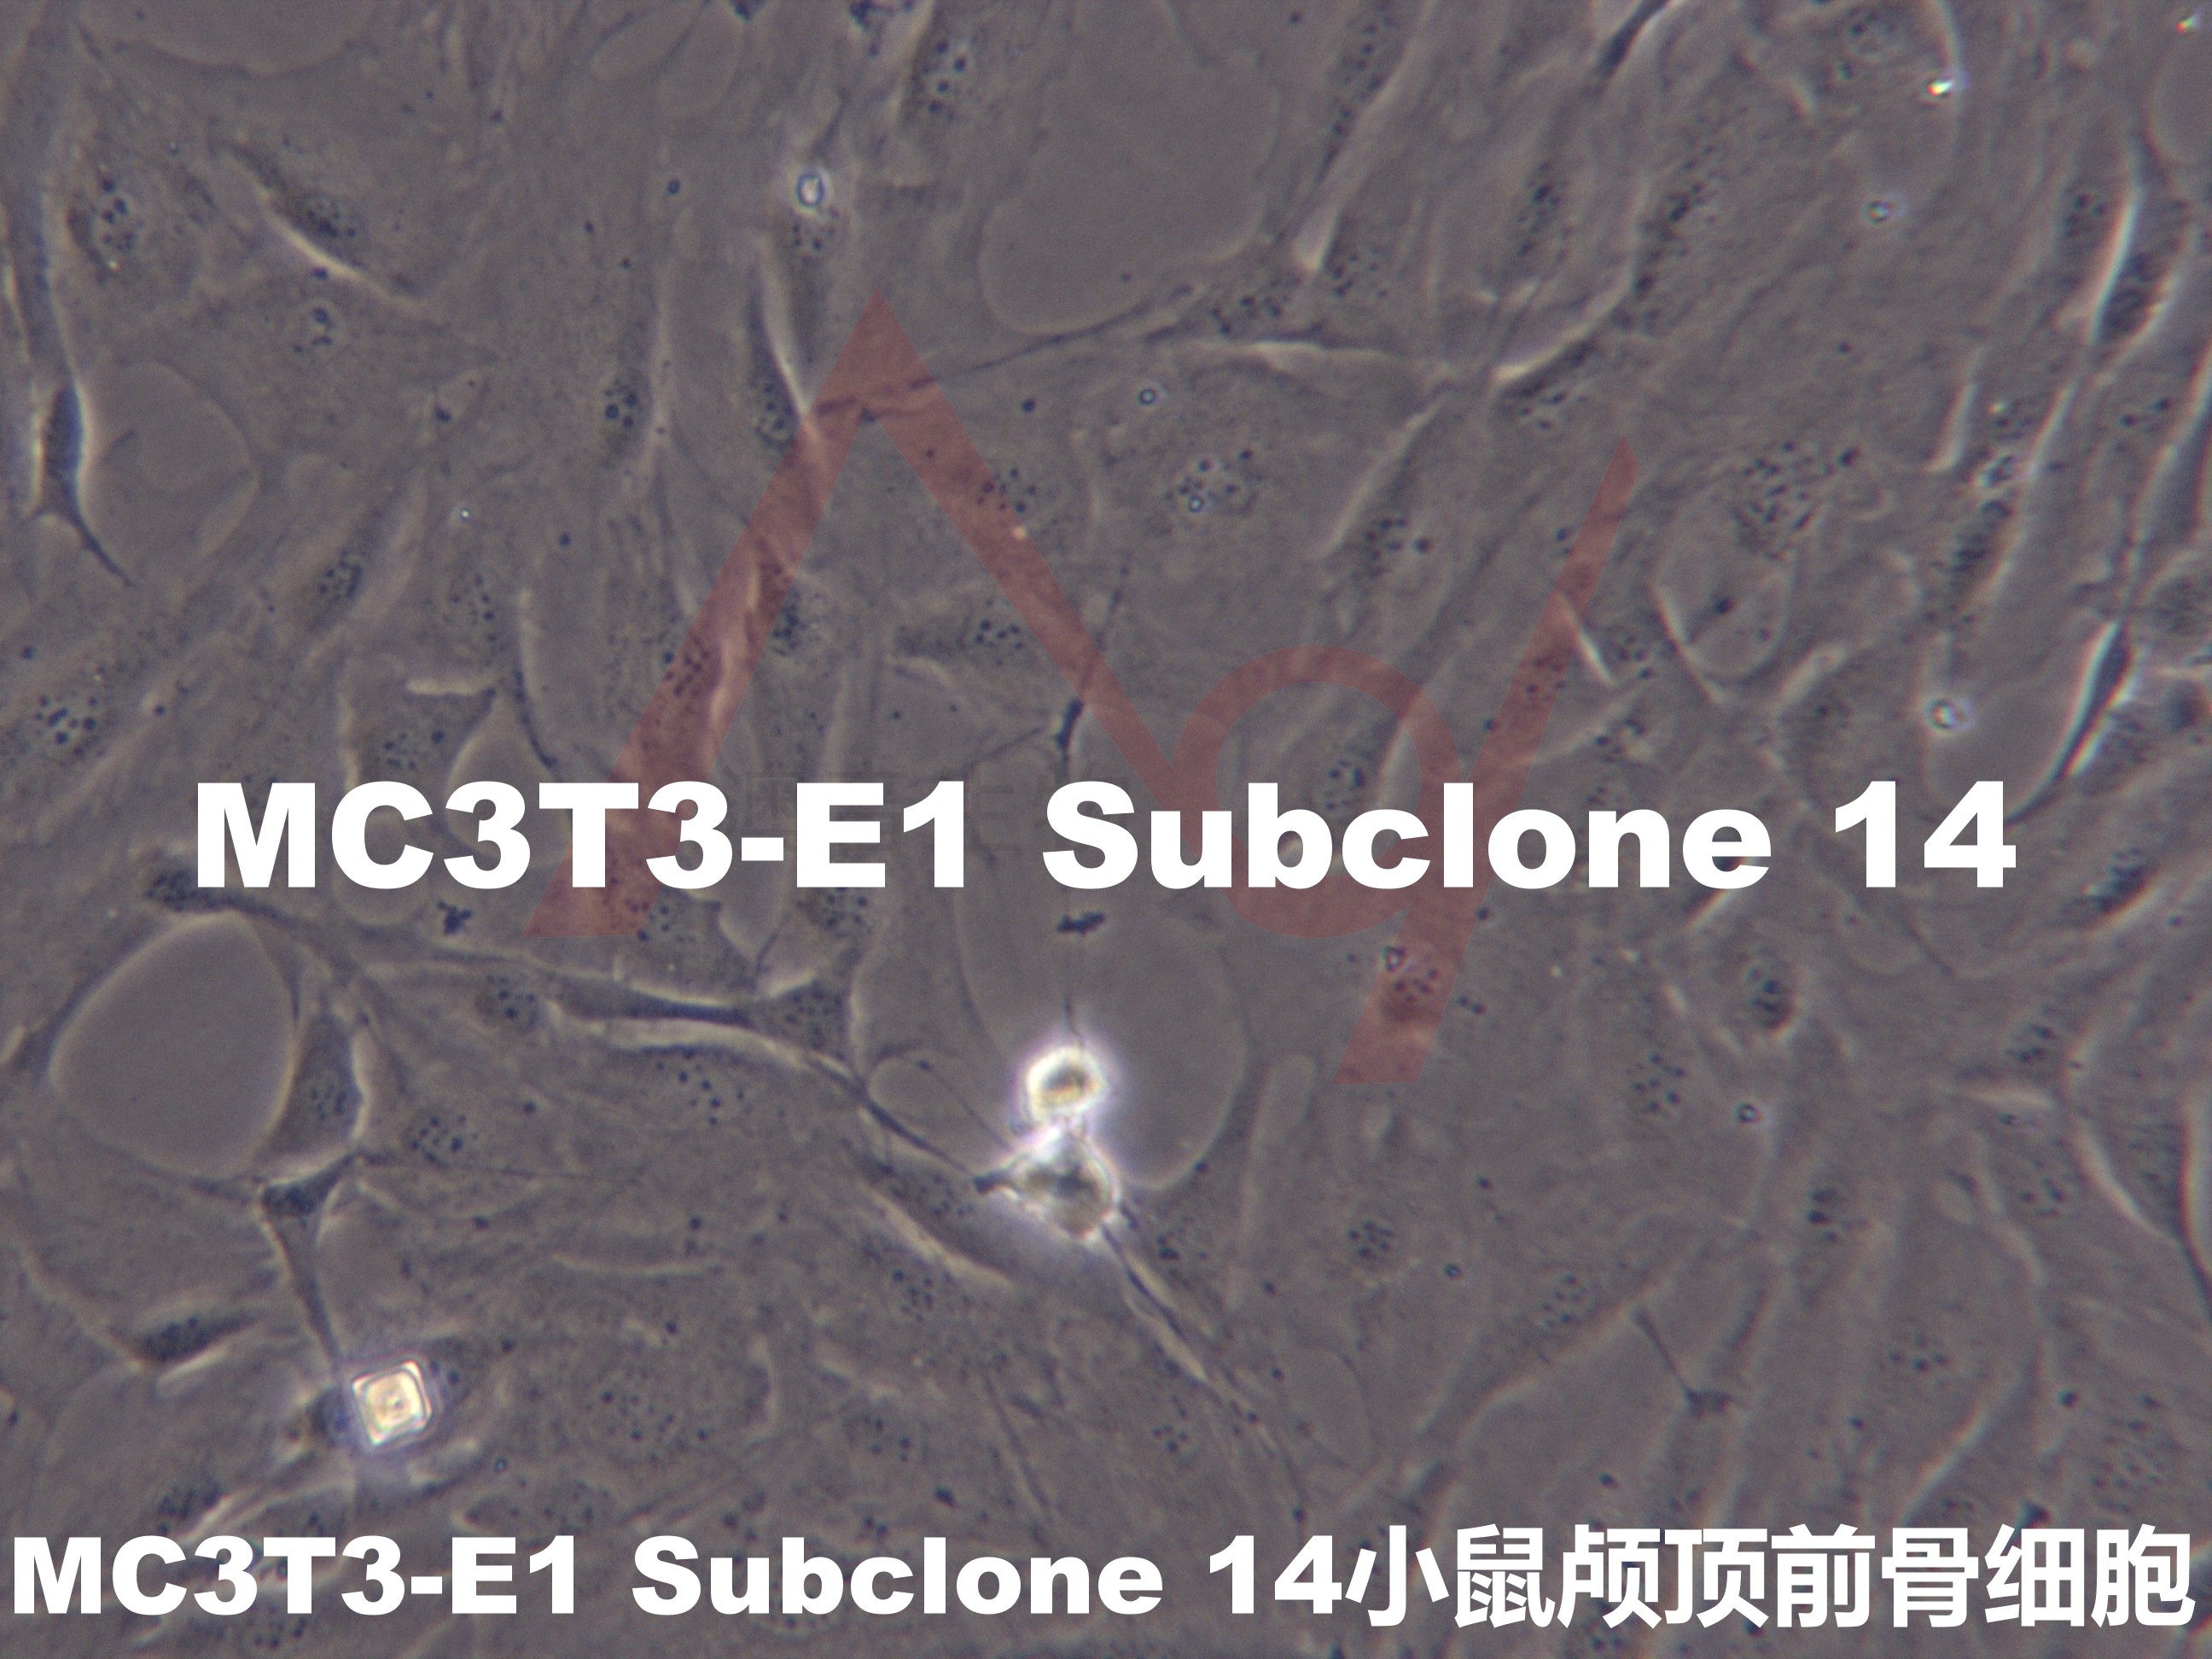 MC3T3-E1 Subclone 14【MC3T3-E1 SUBCLONE 14】小鼠颅顶前骨细胞亚克隆14